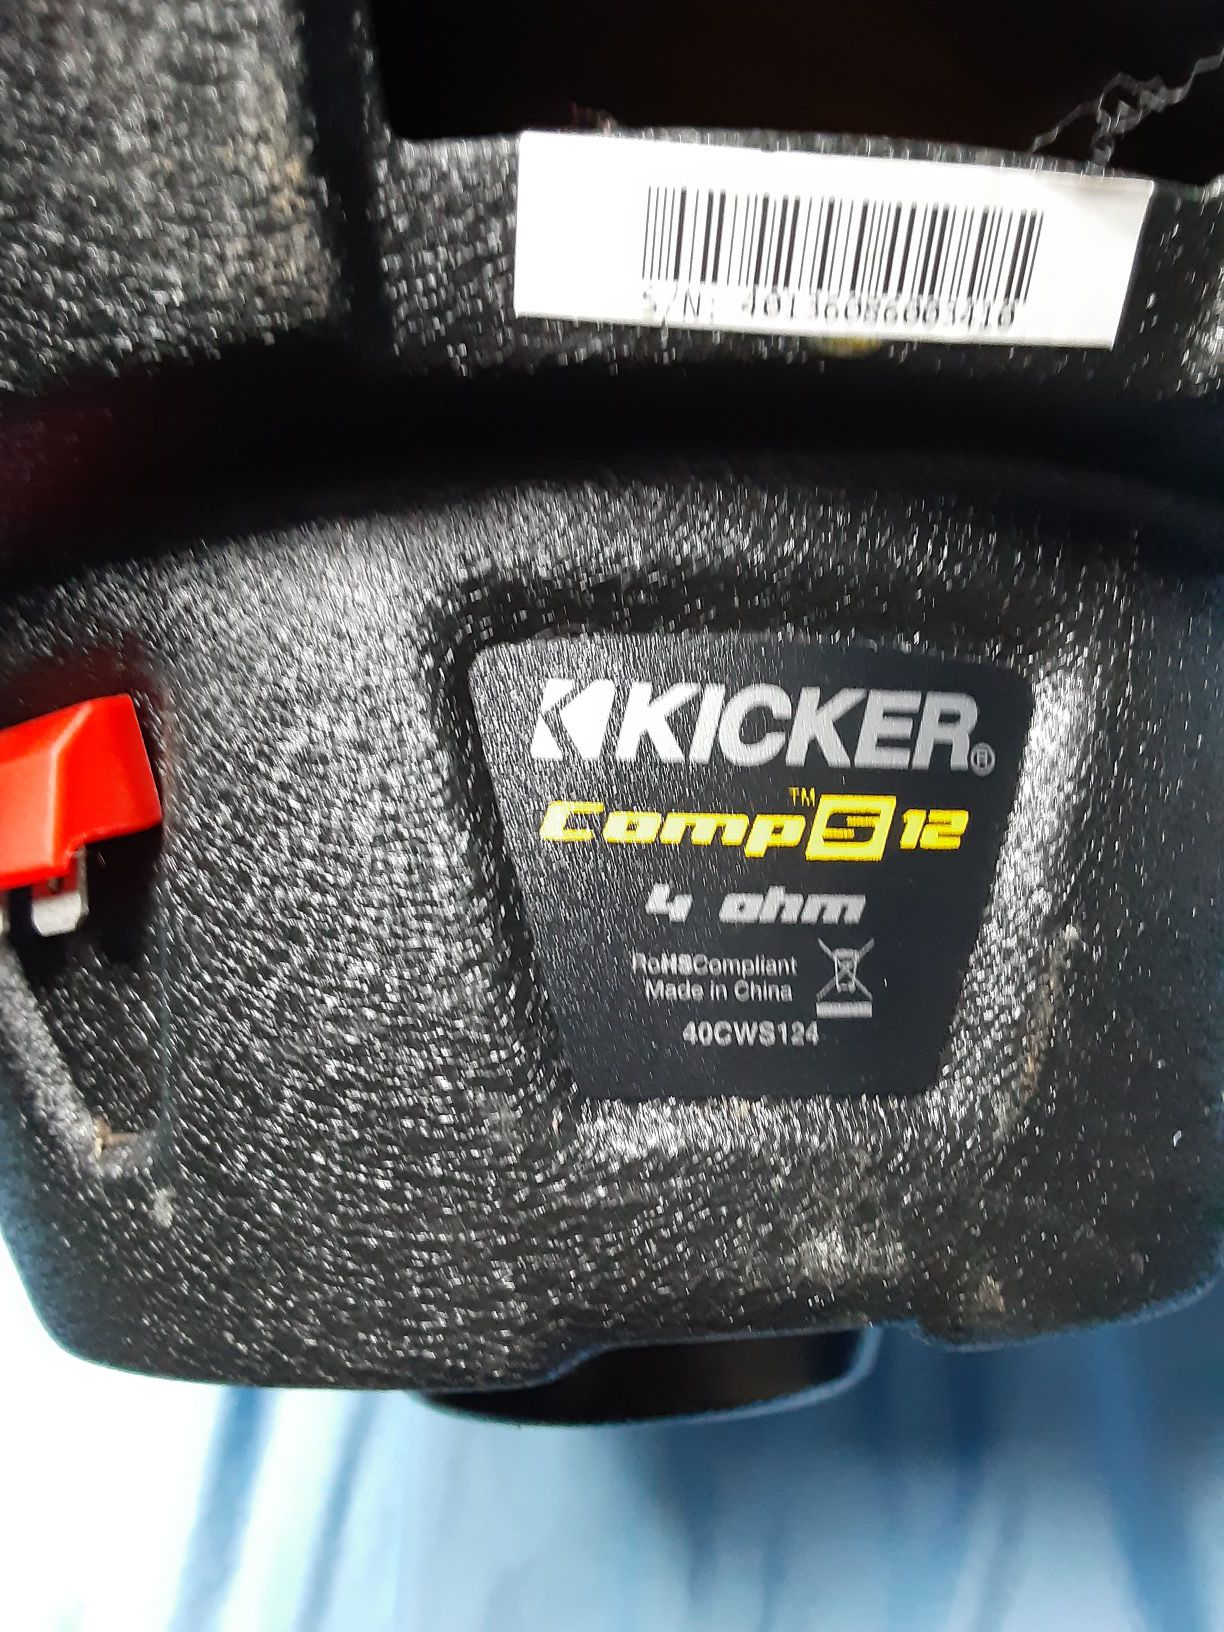 Kicker comps 12s